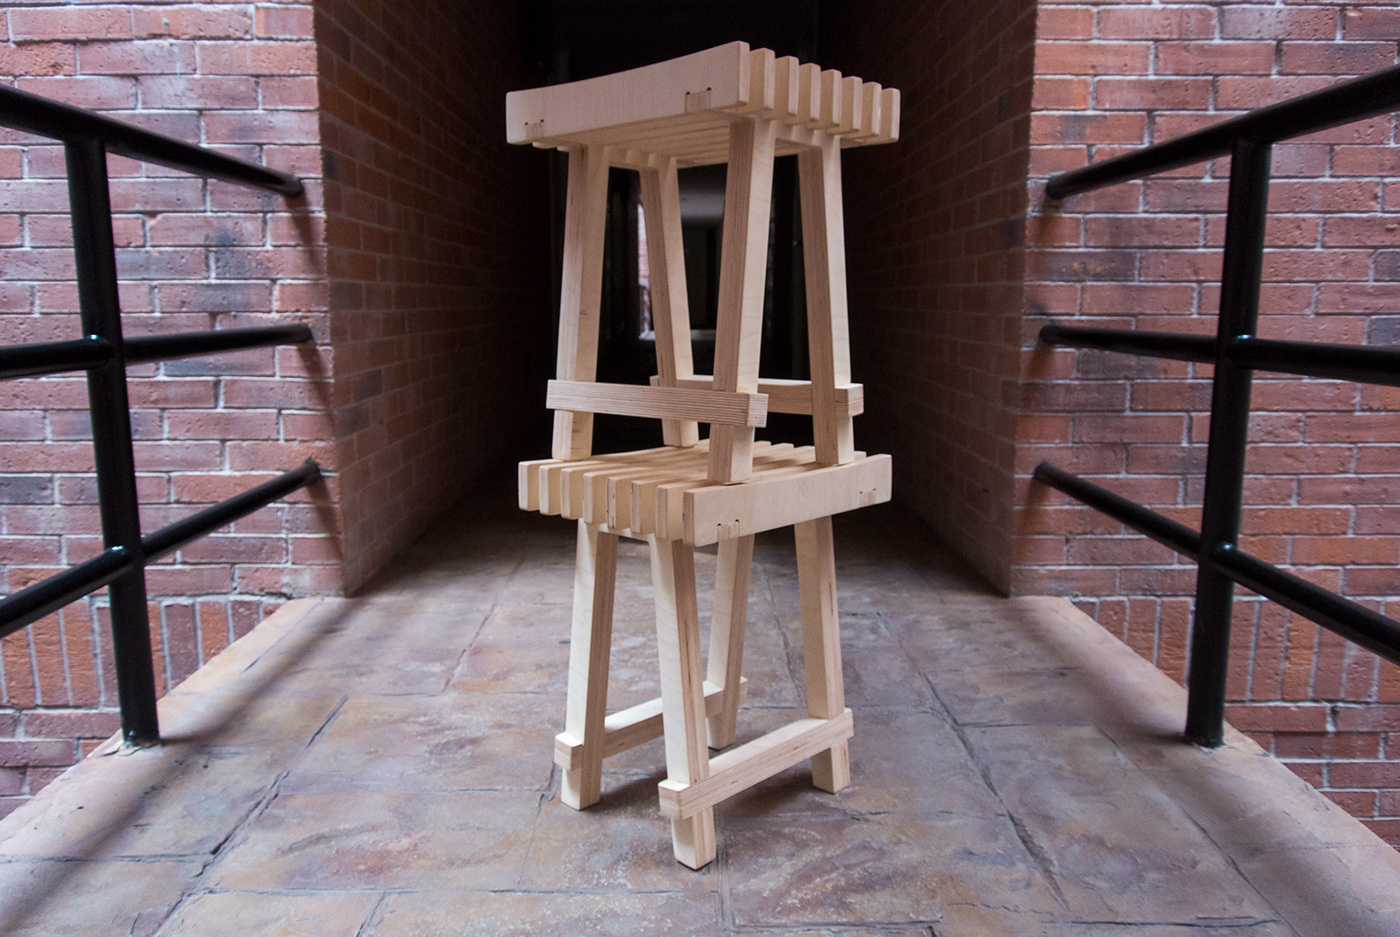 Arado plow banco diseño mexicano Mexican Design diseño industrial stool cnc plywood mobiliario